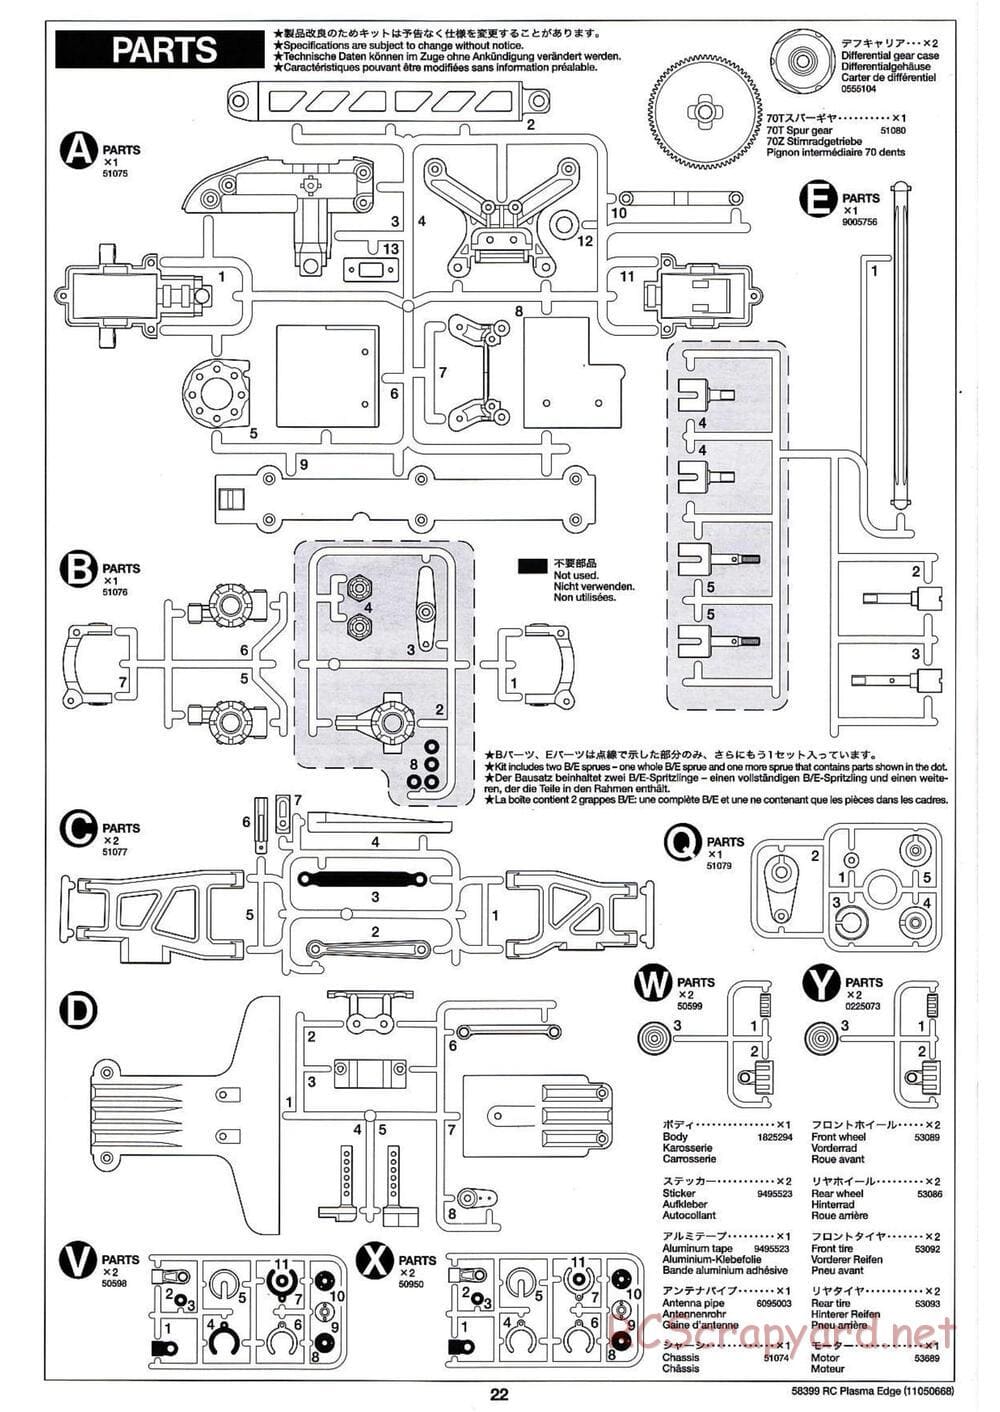 Tamiya - Plasma Edge Chassis - Manual - Page 22